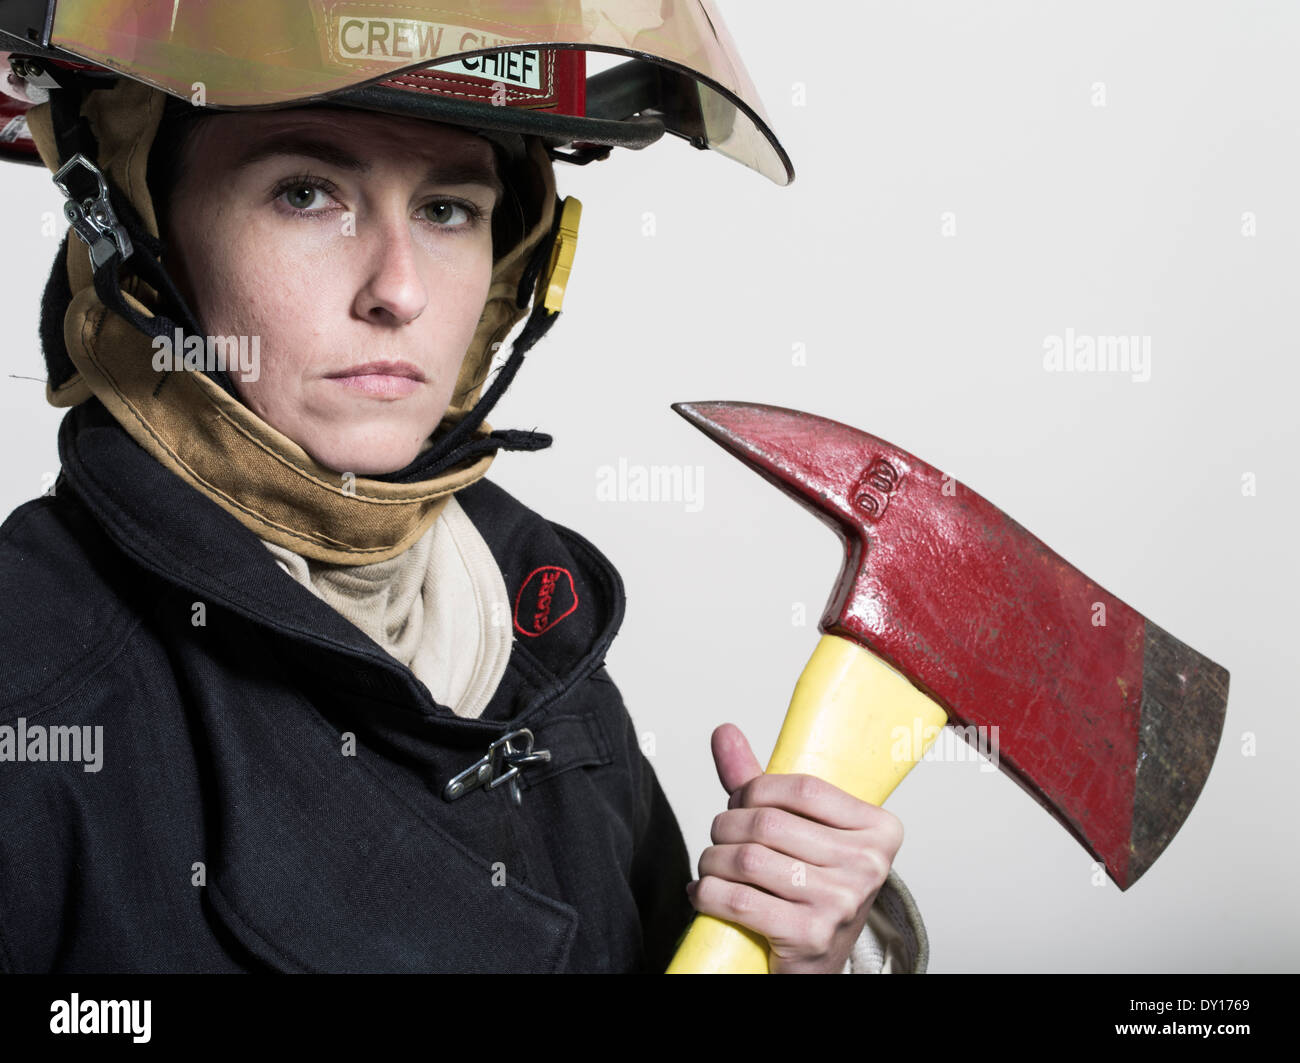 Weibliche Feuerwehrmann in uniform mit Atmung Apparat und Axt strukturelle Brandbekämpfung Stockfoto